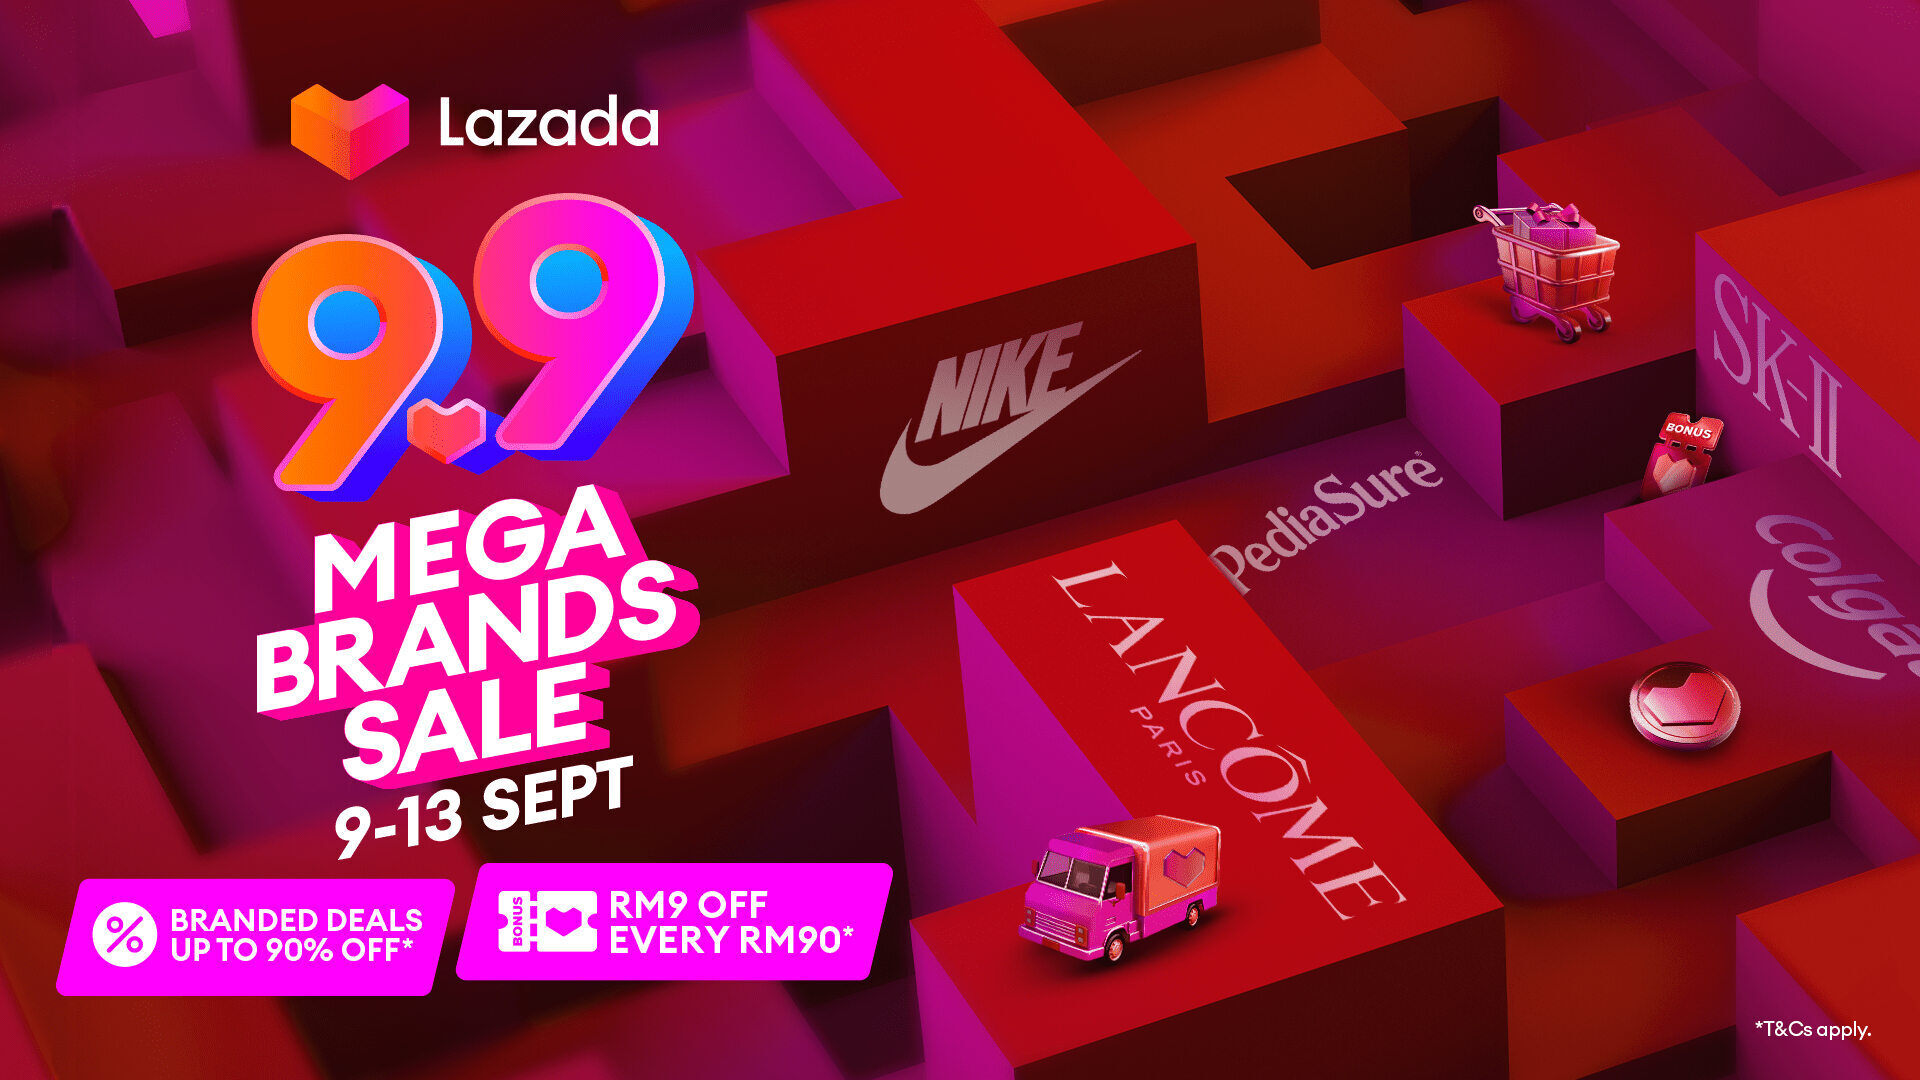 rsz eng press release lazada 99 mega brands sale final